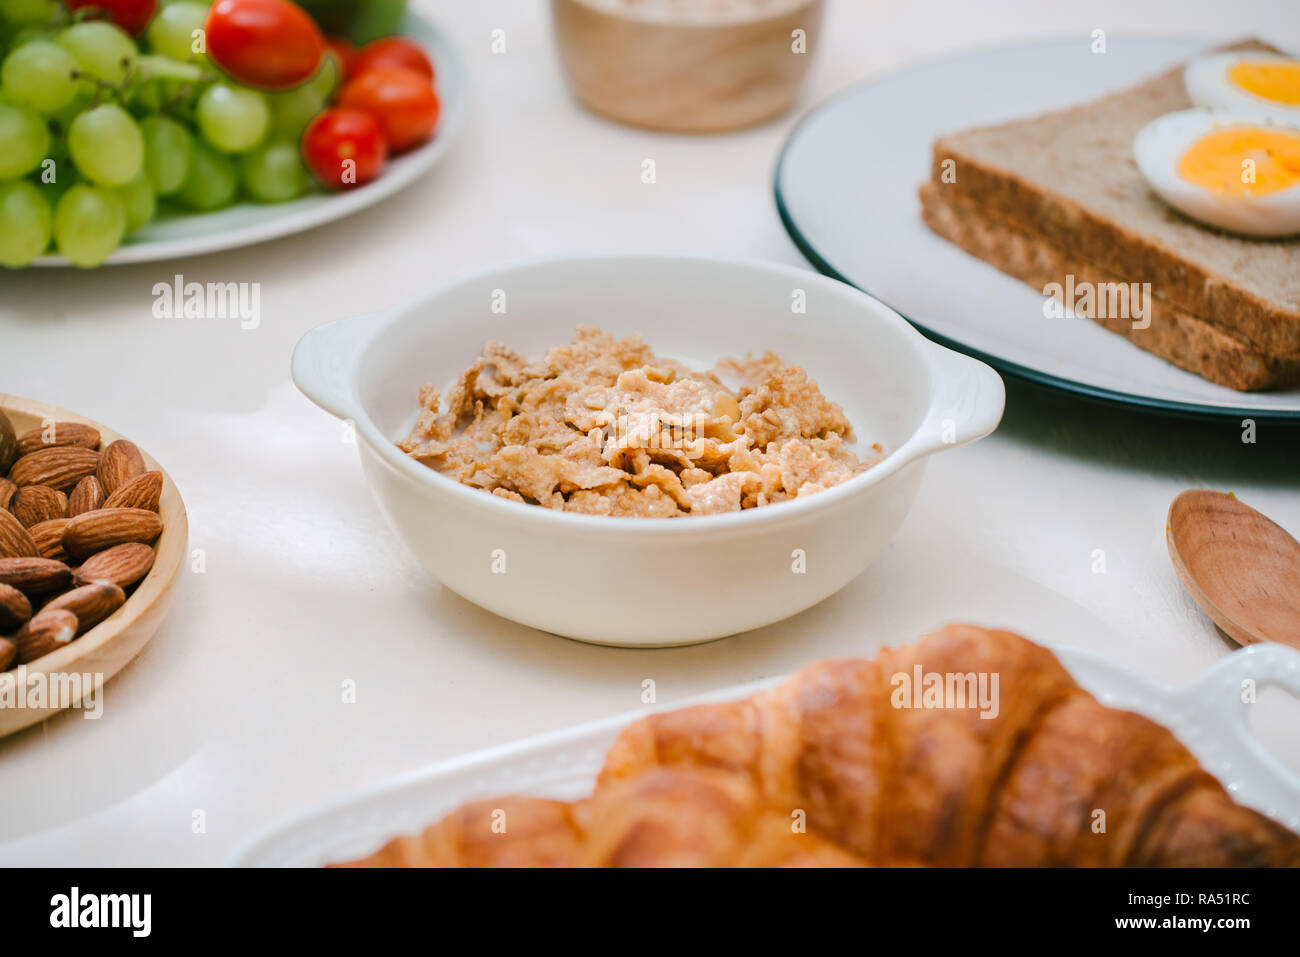 Luce sana colazione con i fiocchi d'avena. Hercules, noci, frutta, uova sode, pane. Oggetti per il servizio da tavola. Cibo sano. Foto Stock